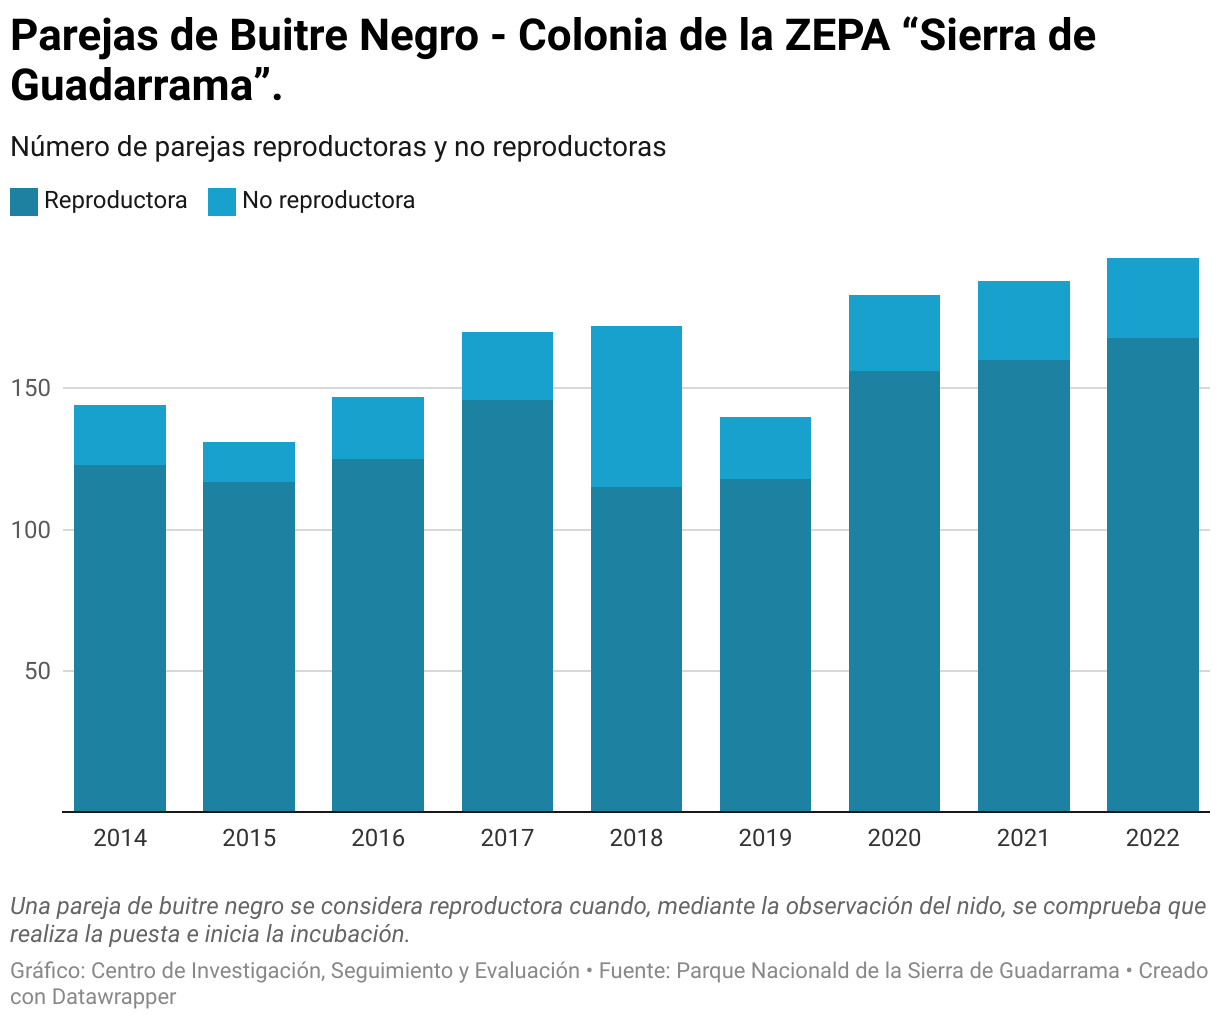 Parejas de Buitre Negro en la Colonia de la ZEPA “Sierra de Guadarrama”.